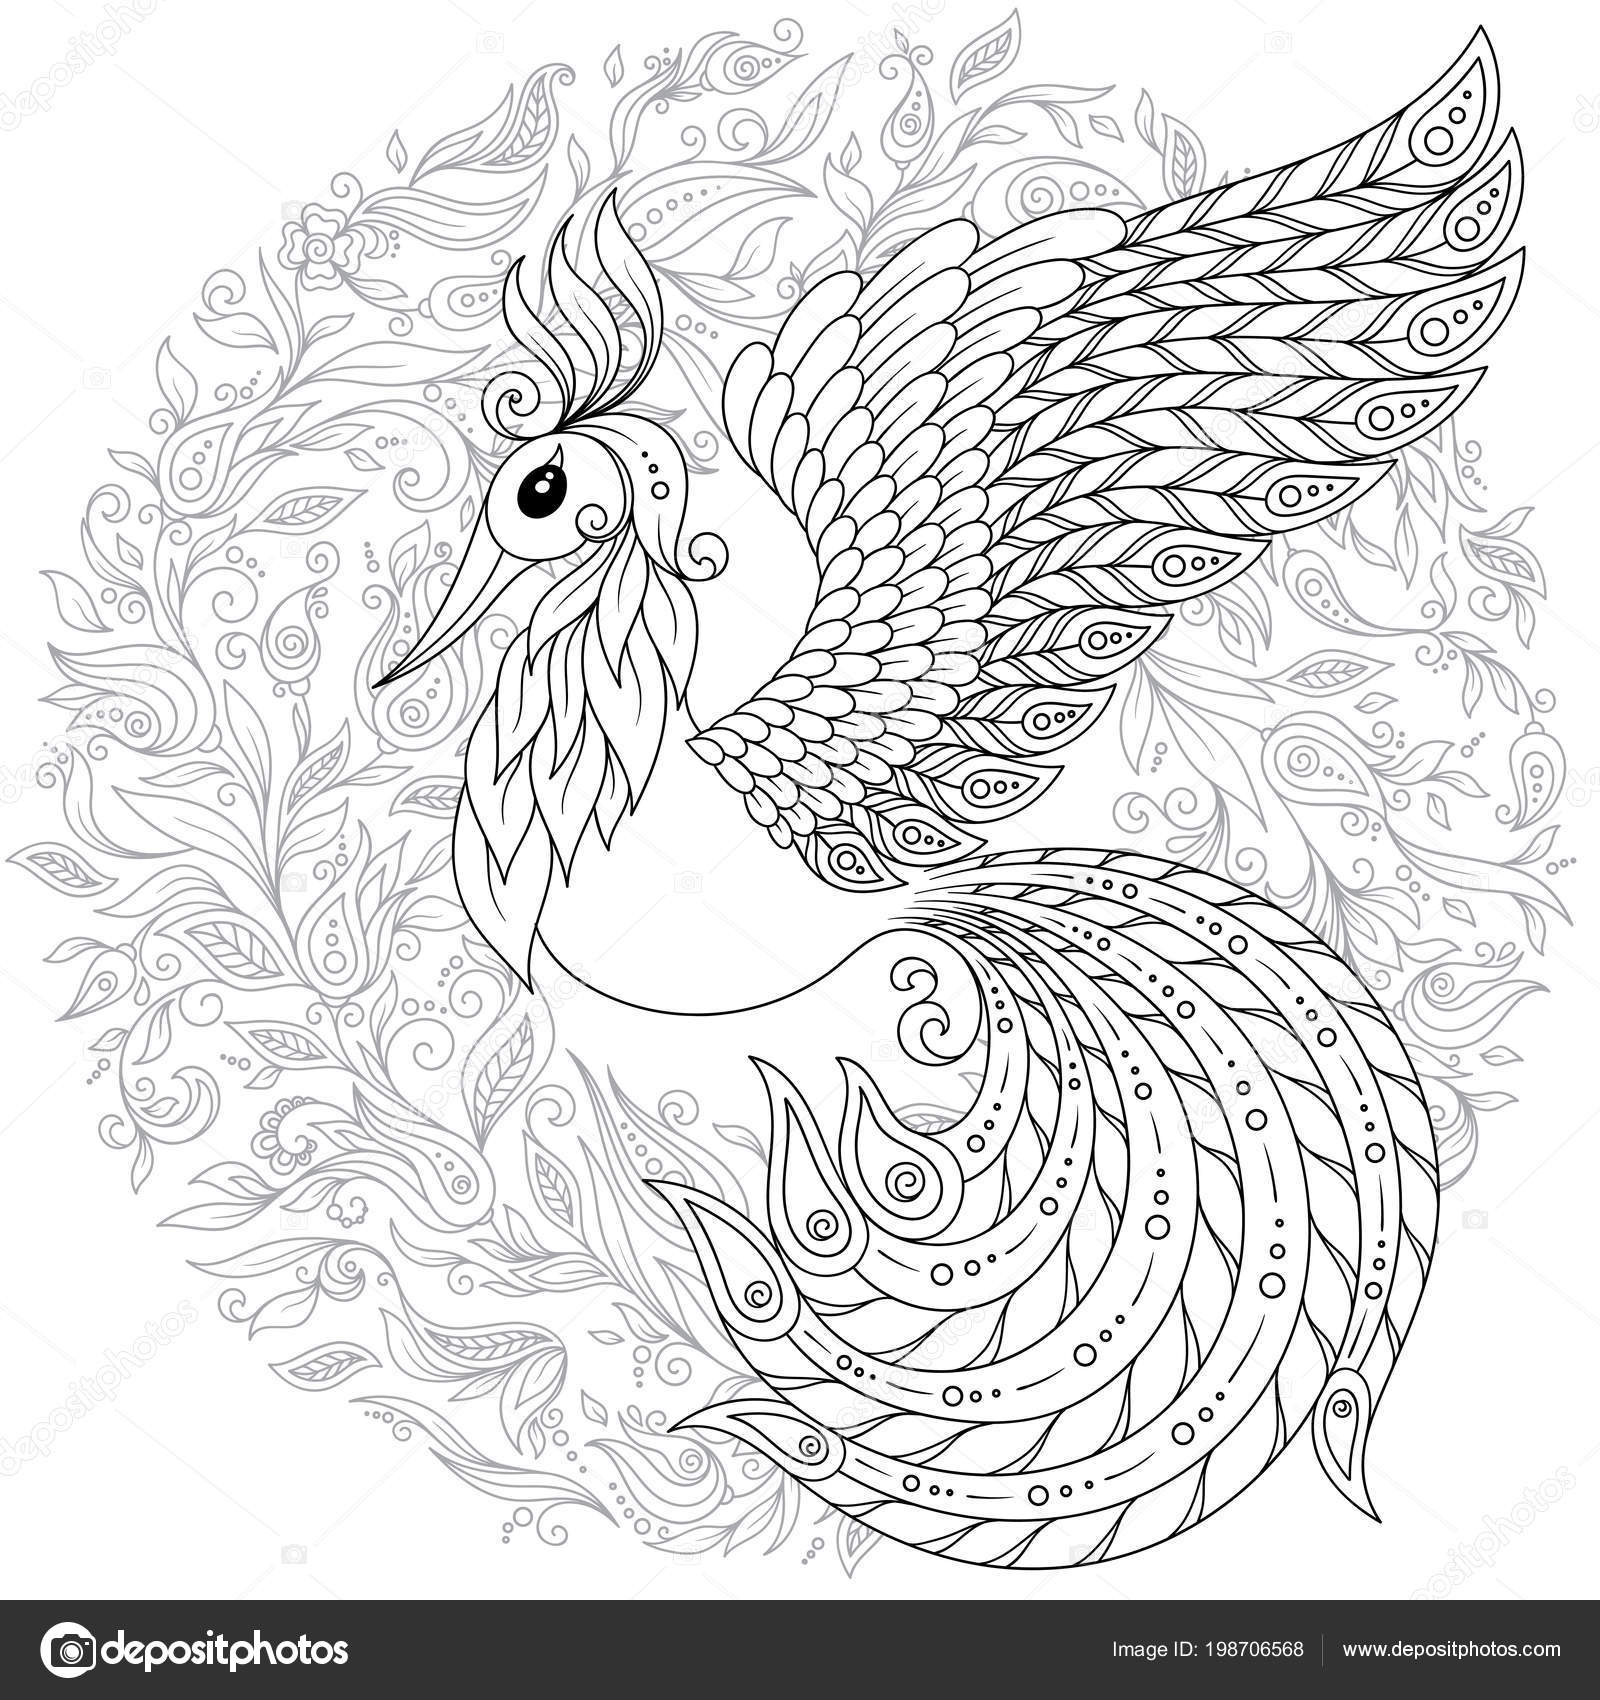 Firebird pour anti stress Coloriage avec haute précision Page de livre de coloriage pour adultes et enfants Collection Black White Bird